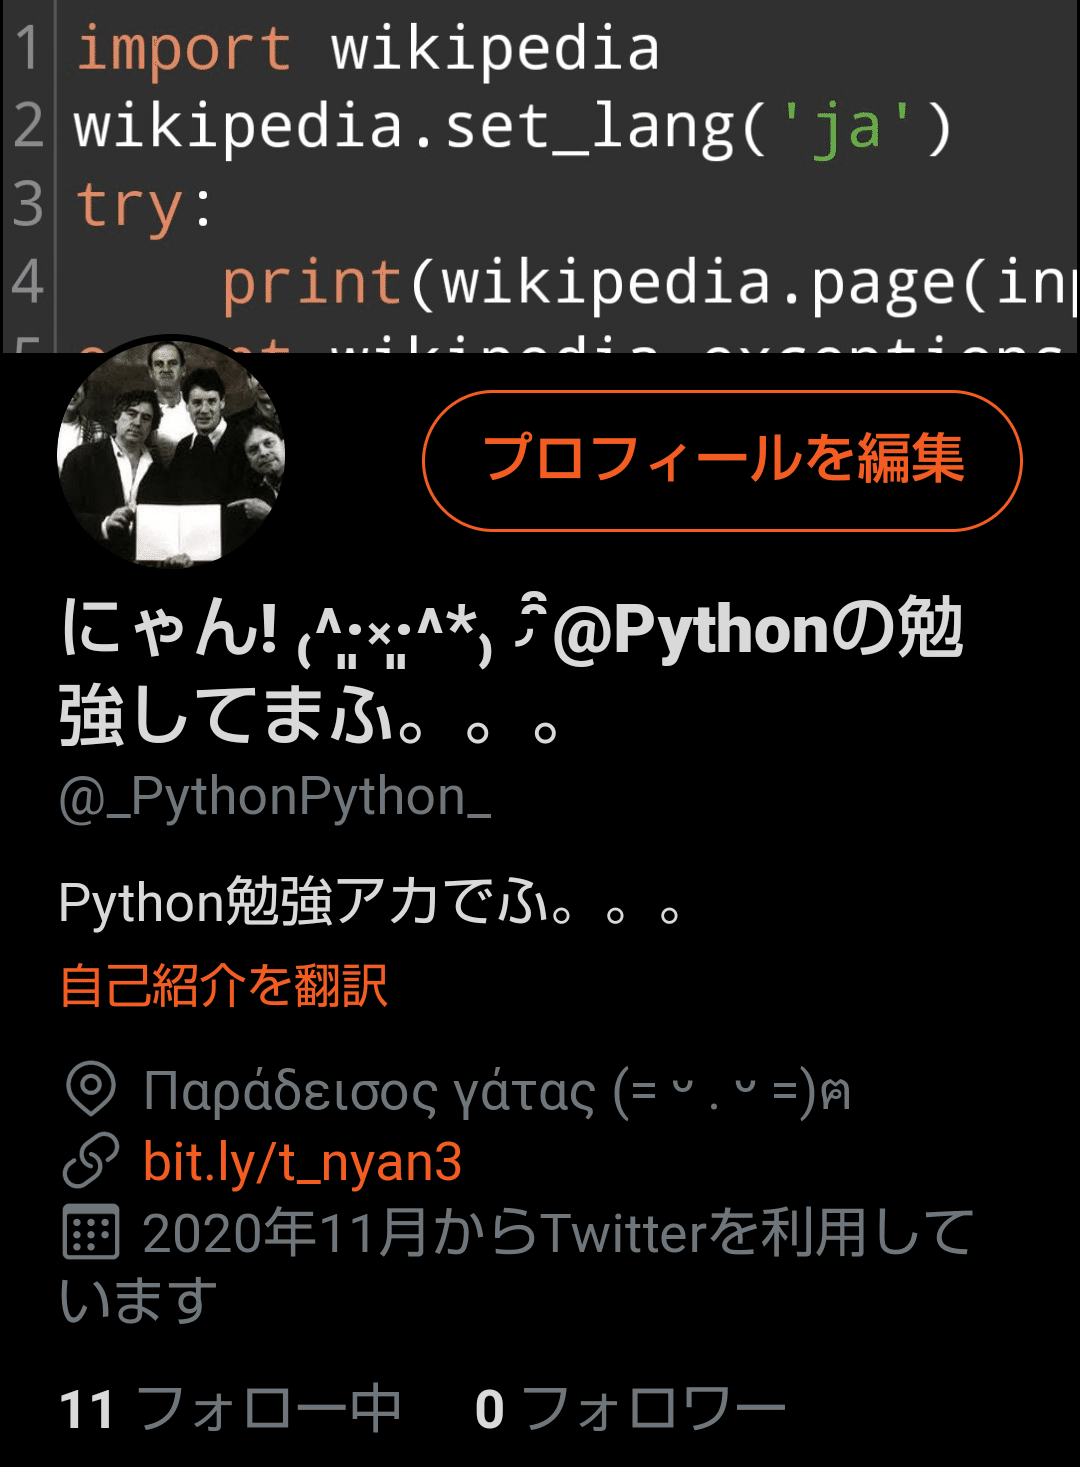 Pythonツイッターアカウント Twitter Com Pythonpython を作った Python プログラミング を Android スマホで勉強中 𝓗𝓊𝓂𝓅𝓉𝓎 𝓓𝓊𝓂𝓅𝓉𝓎 Note